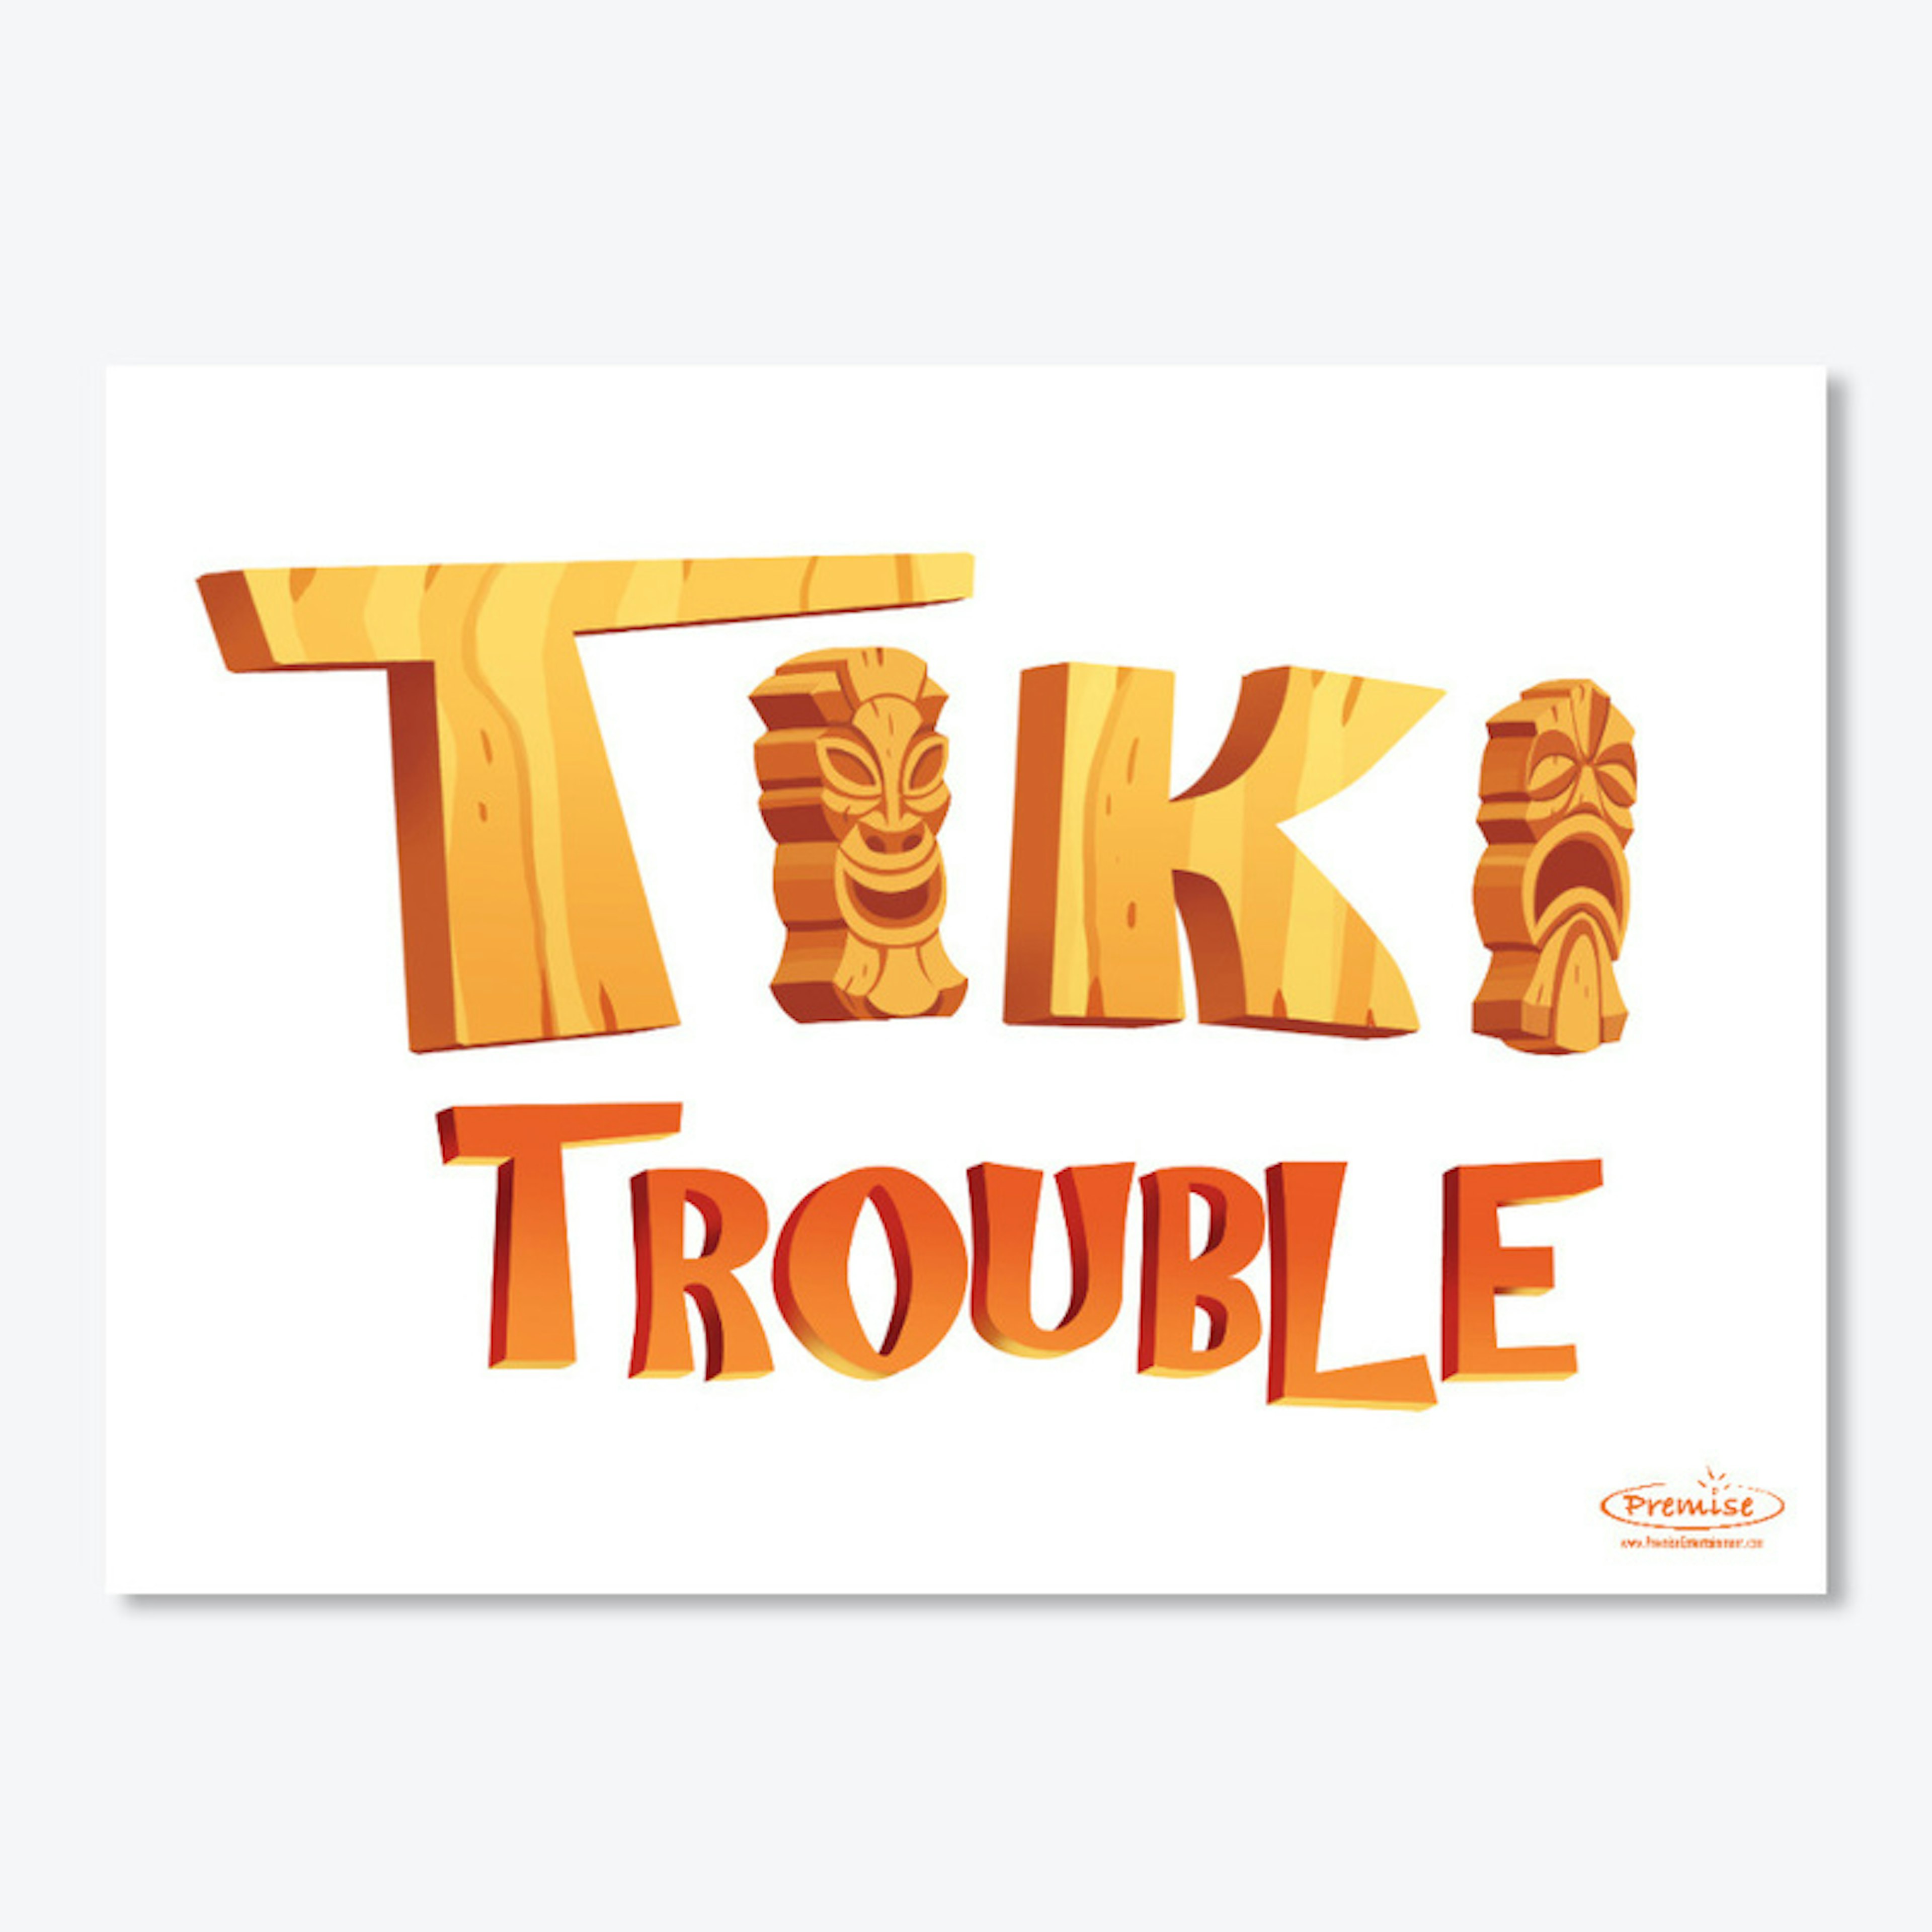 Tiki Trouble Logo